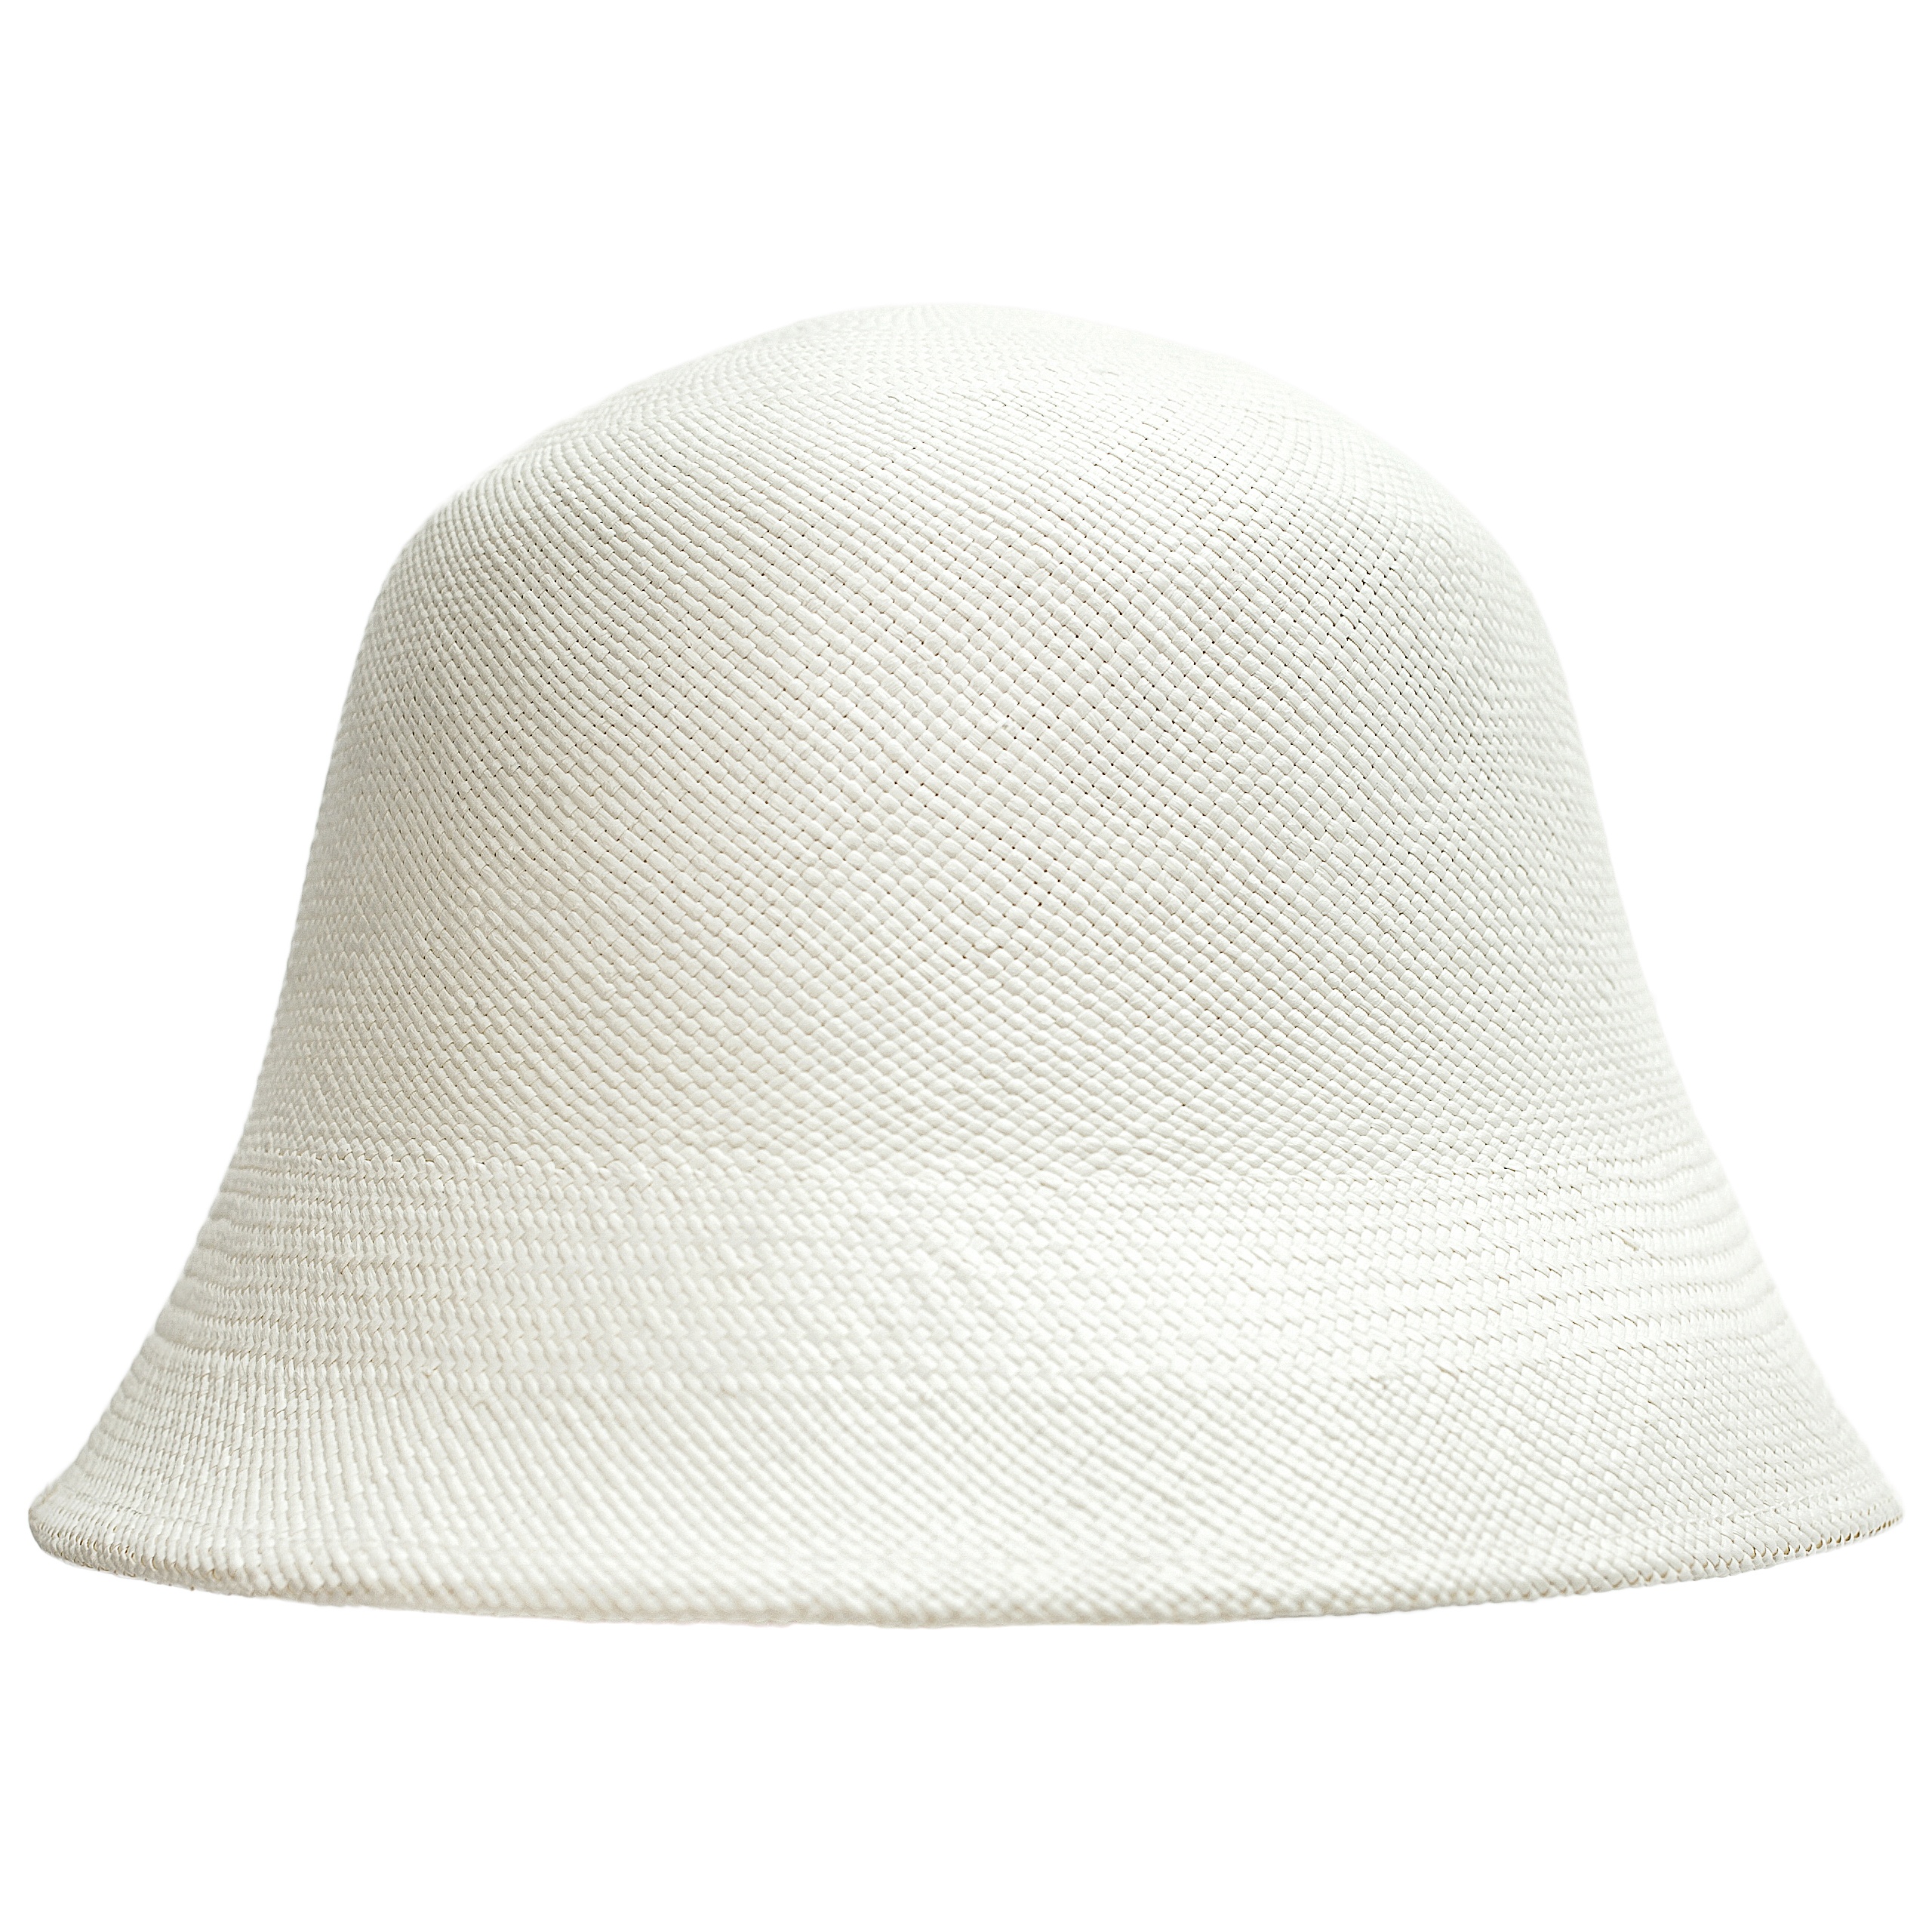 WHITE TOQUILLA HAT - 1